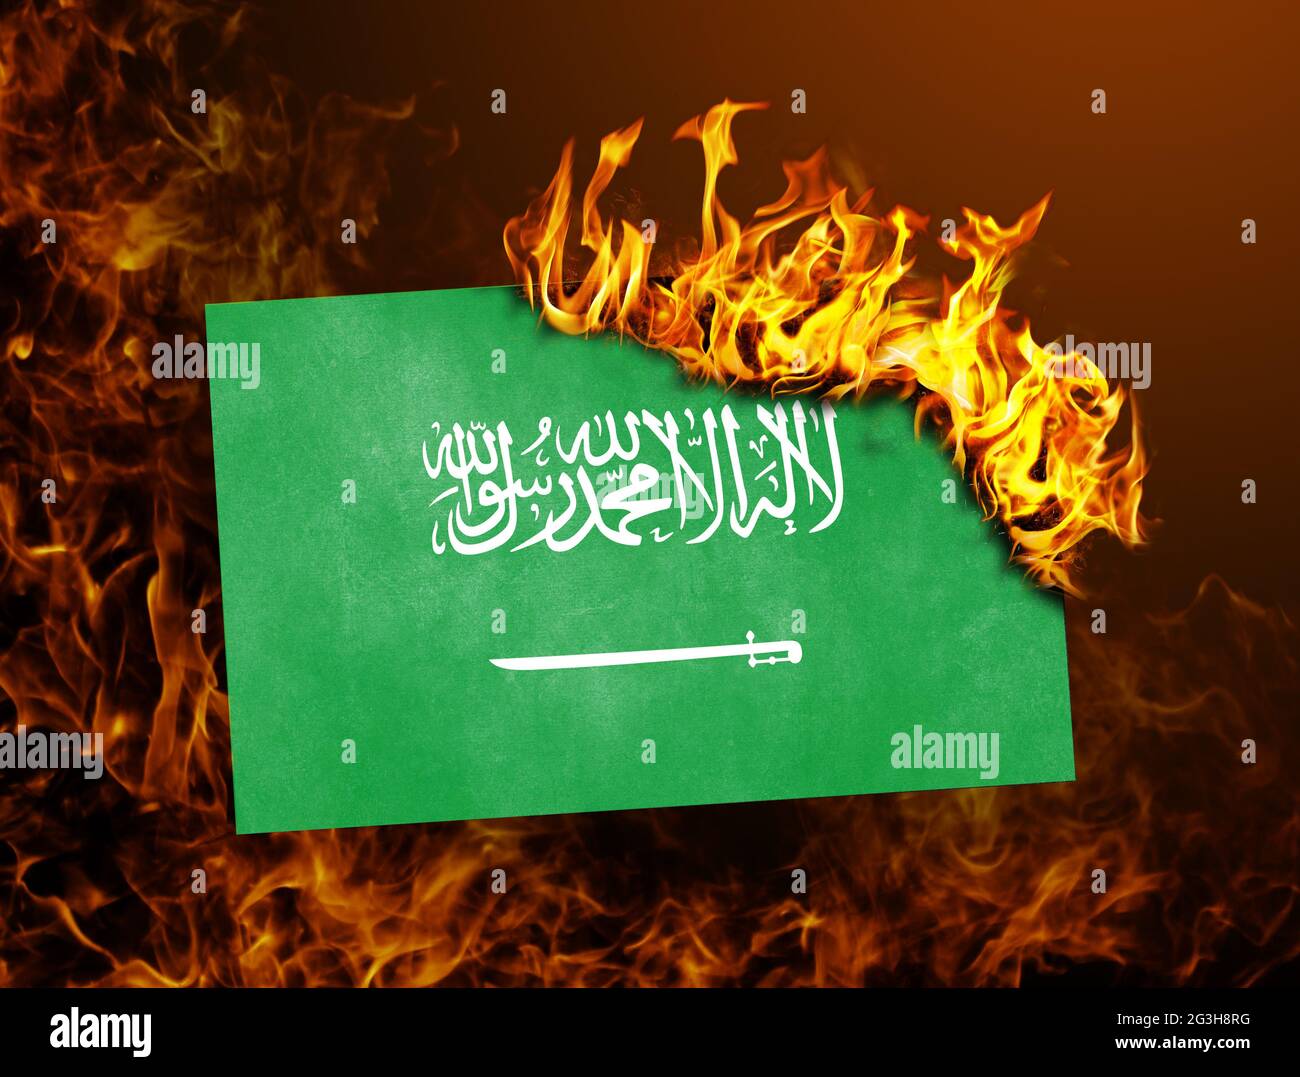 Flag burning - Saudi Arabia Stock Photo